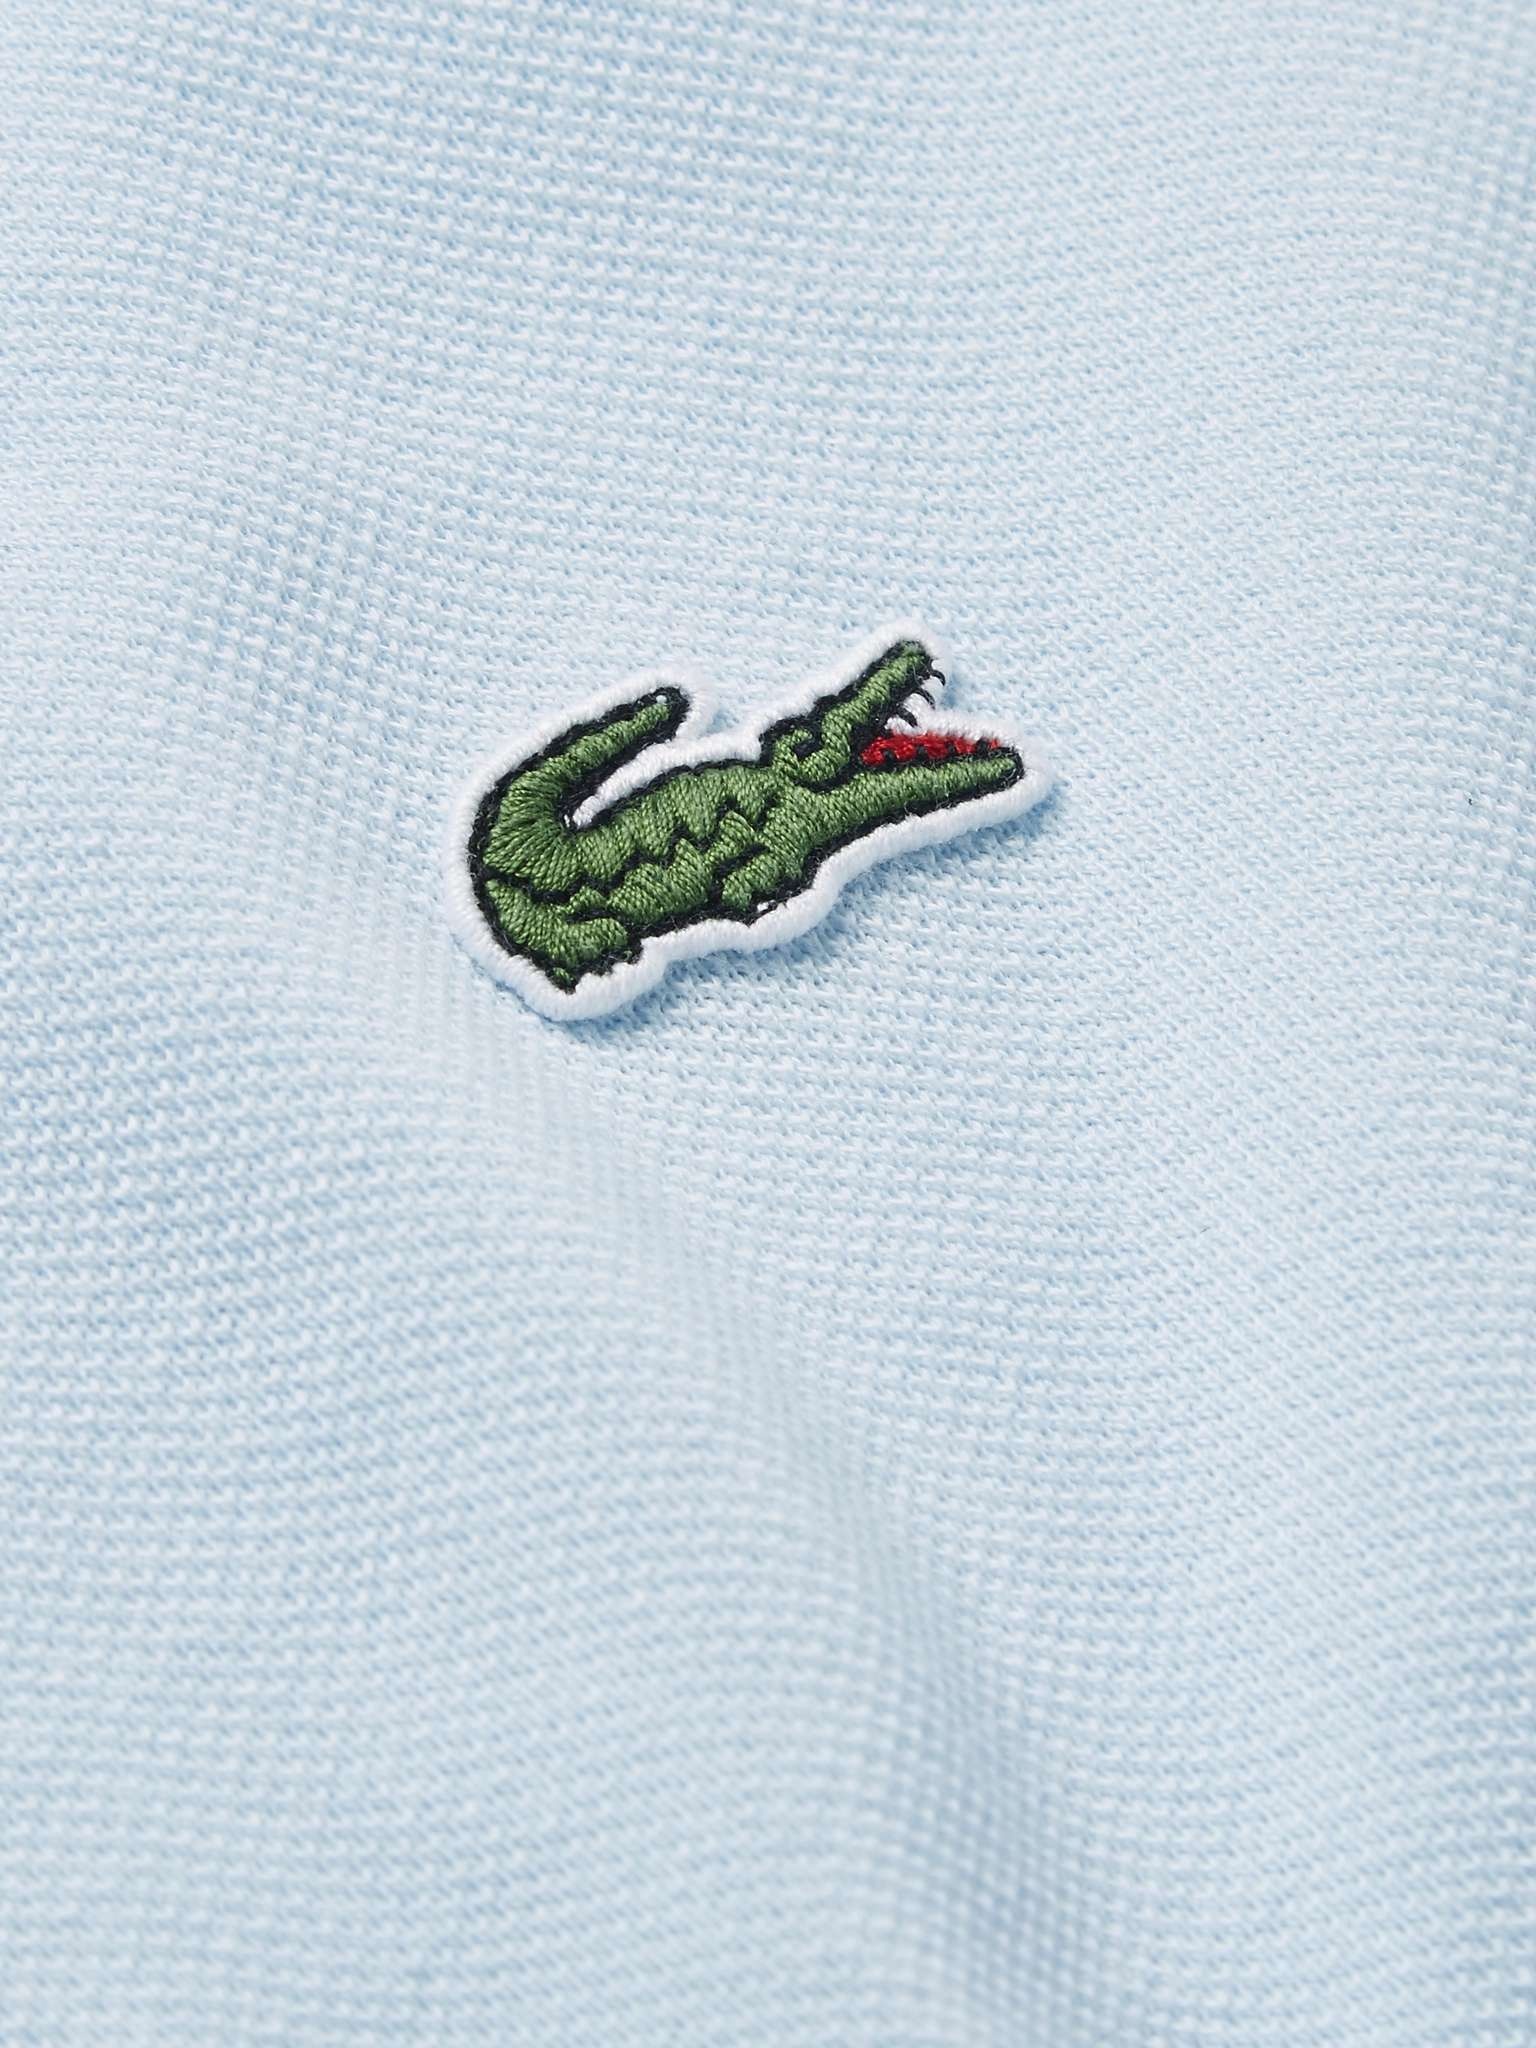 Logo-Appliquéd Cotton-Piqué Polo Shirt - 3